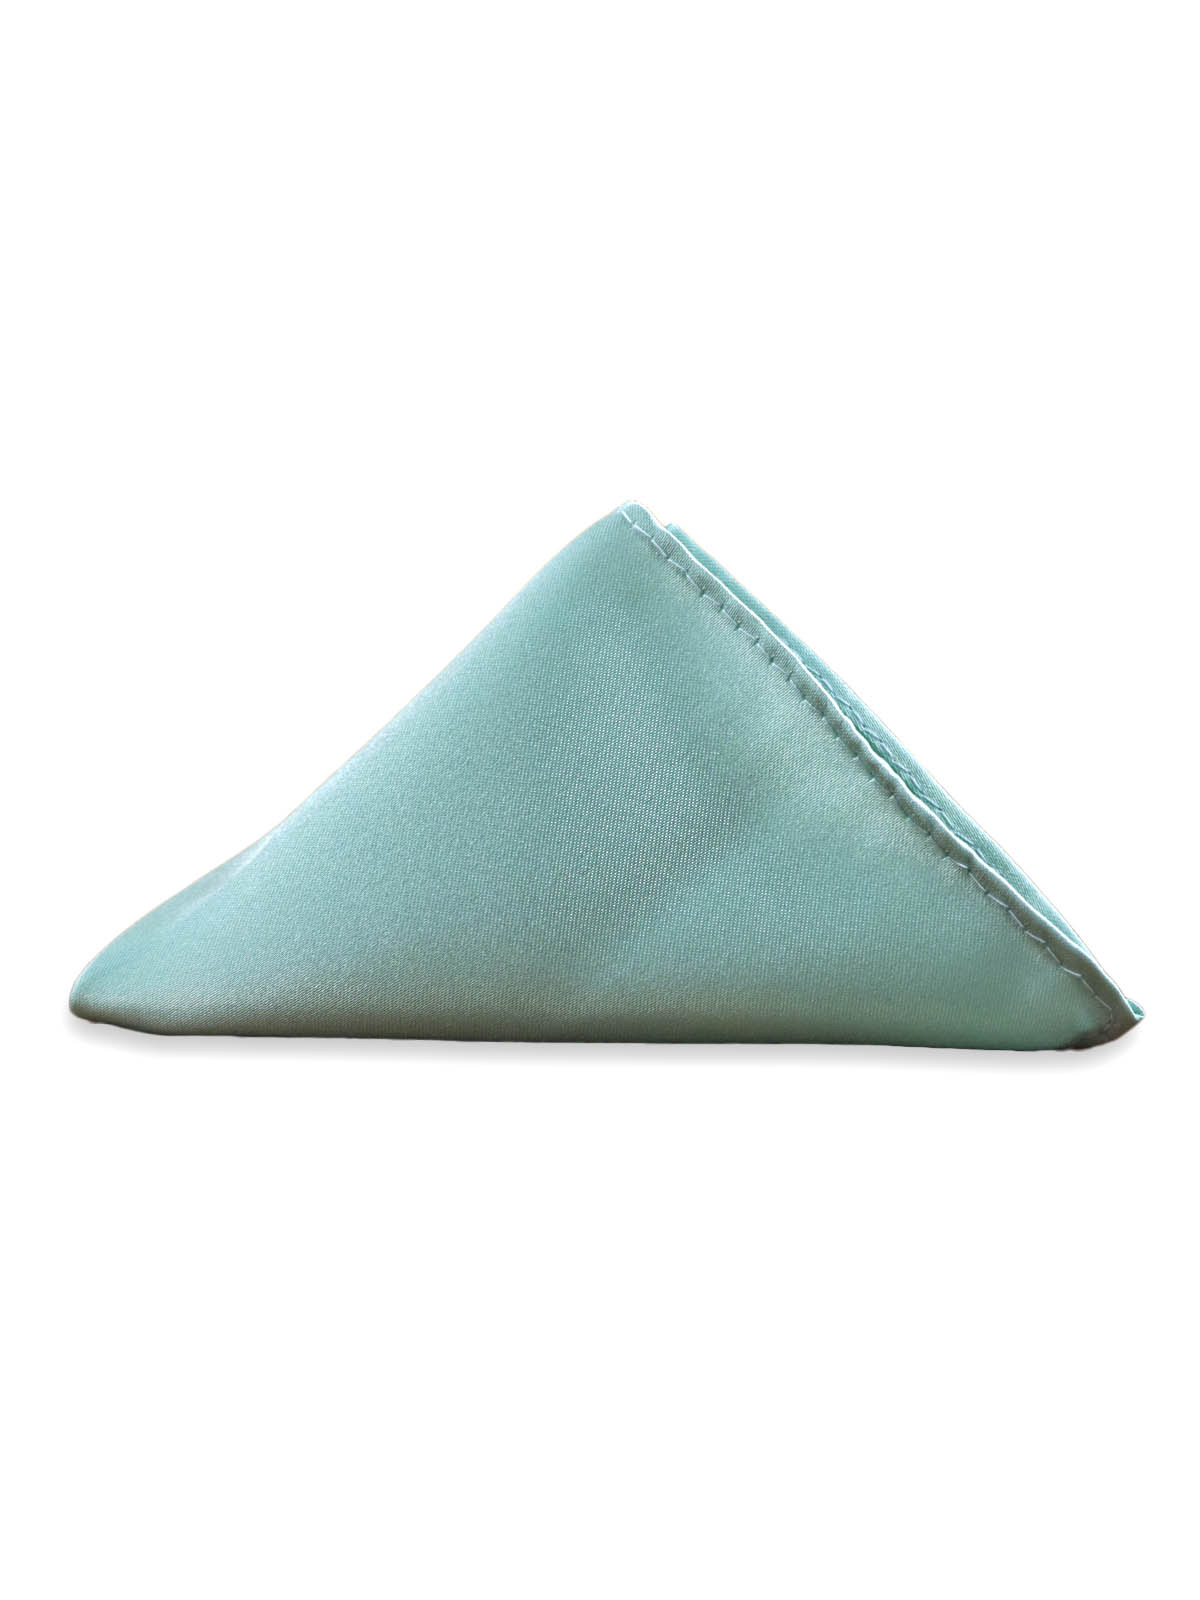 Нагрудный платок атласный цвета тиффани описание: Материал - Полиэстер, Размеры - 20,5 х 20,5 см, Страна производства - Турция;